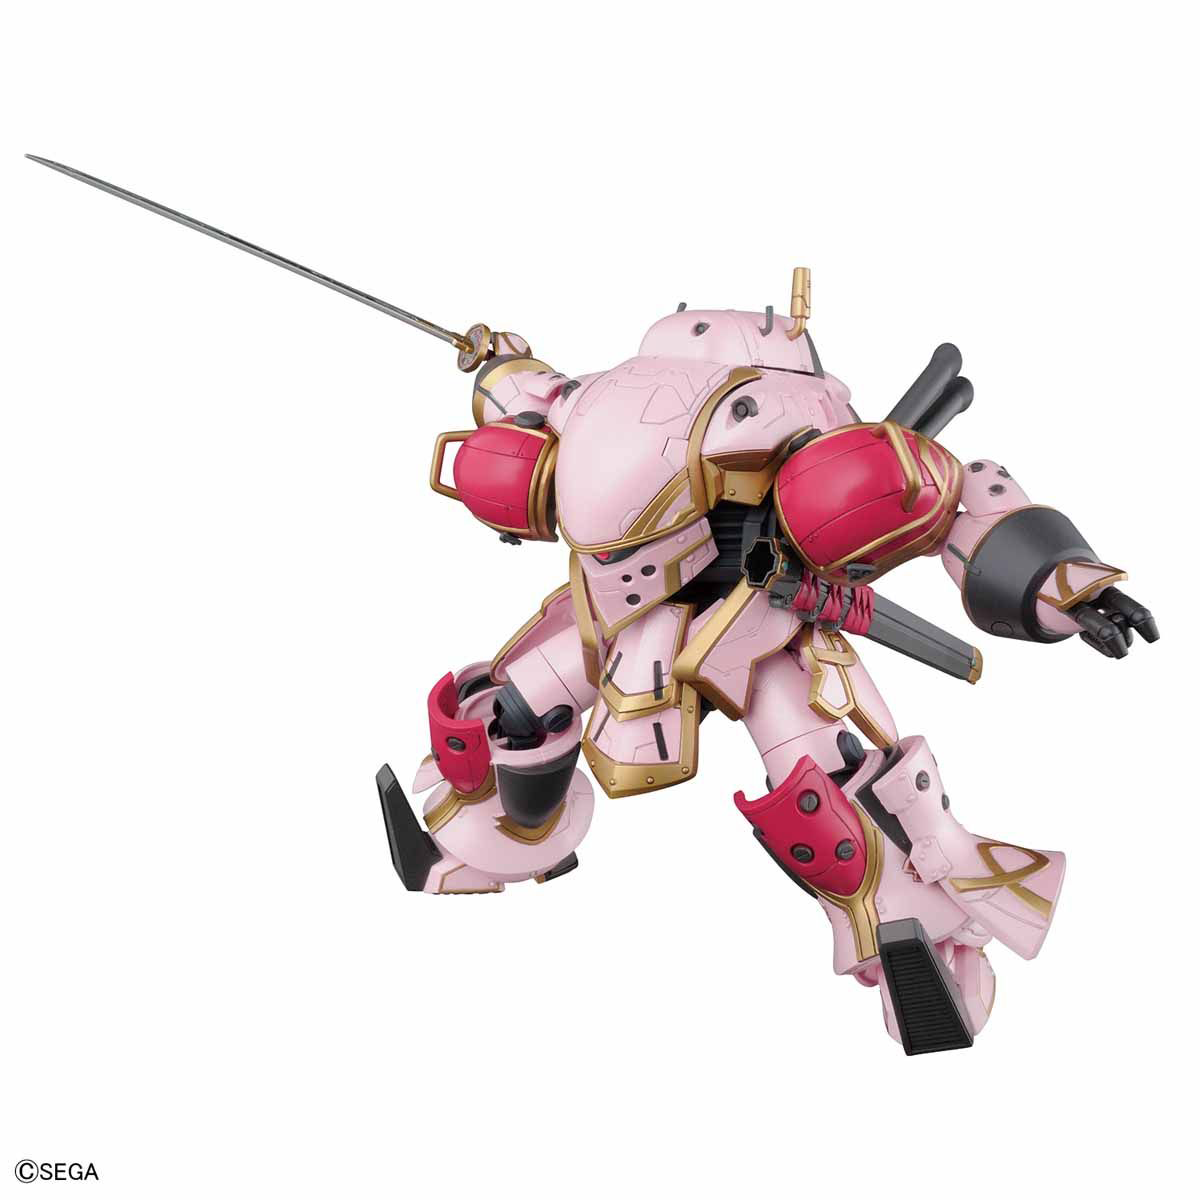 Sakura Wars - HG Spiricle Striker Prototype Obu (Sakura Amamiya Type)